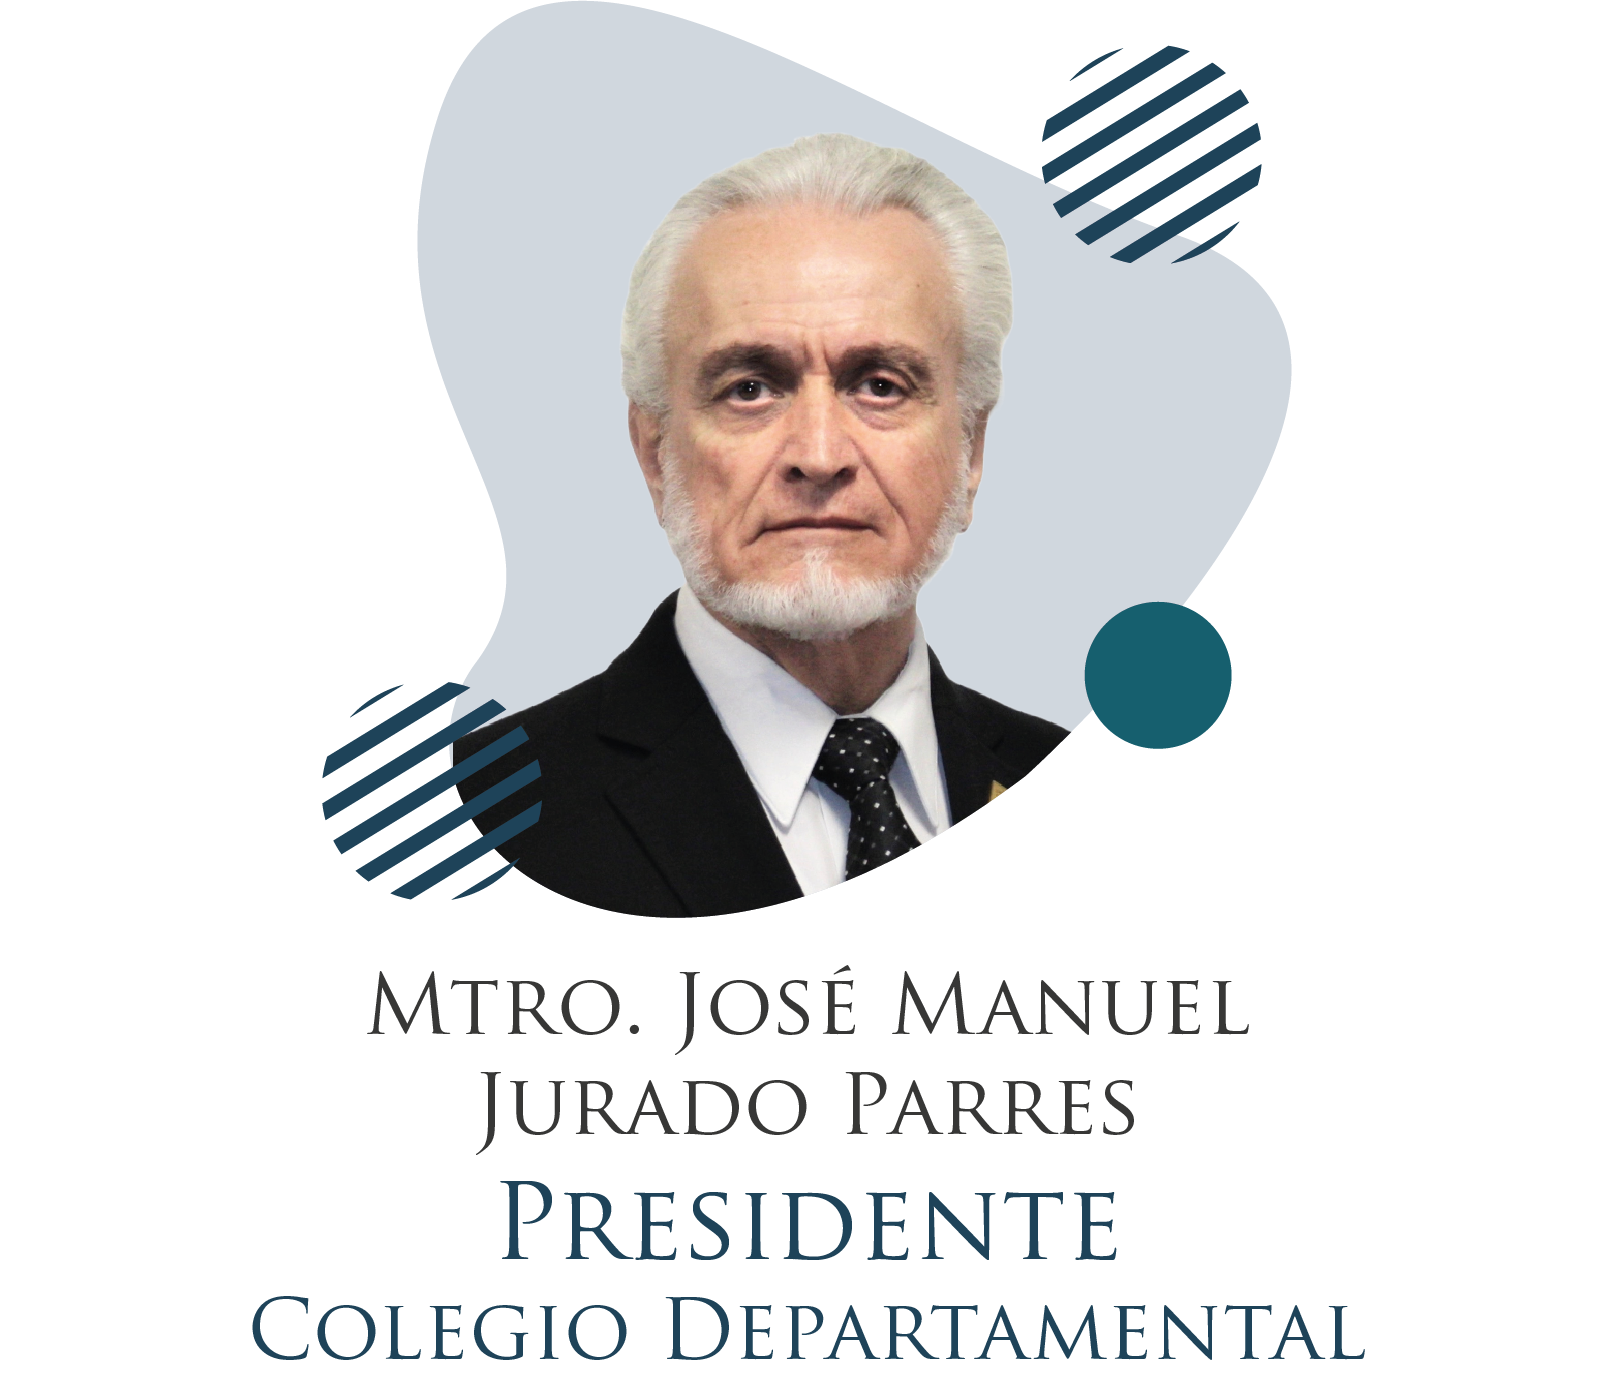 Mtro. José Manuel Jurado Parres